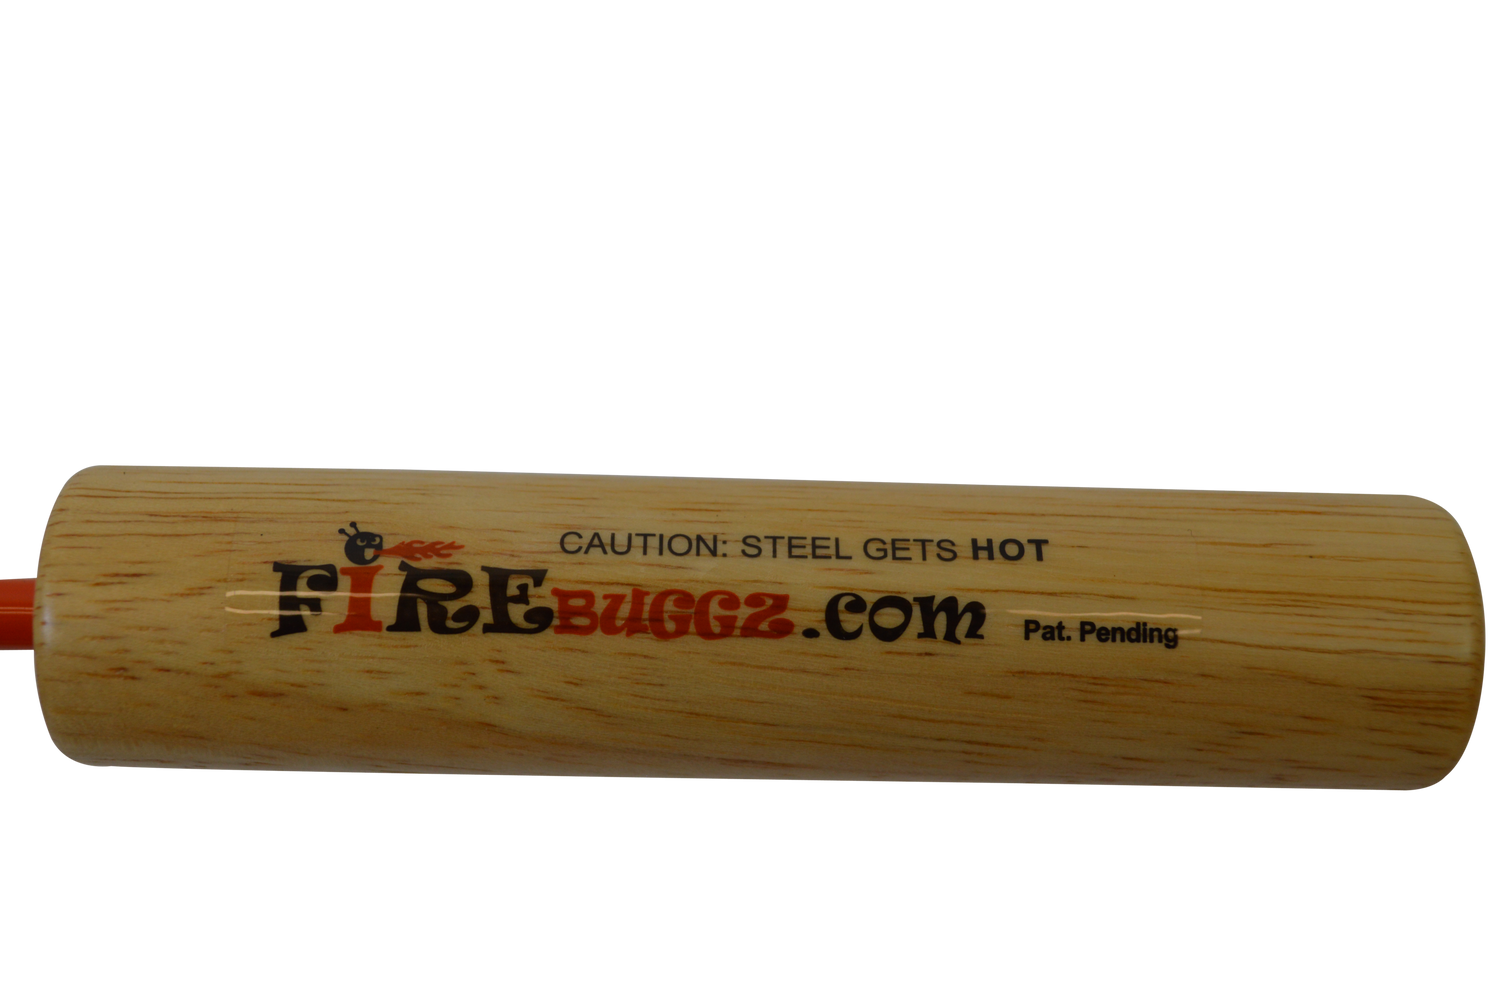 Fire Fishing Pole Yellow & Black Two Pack - Firebuggz – Firebuggz